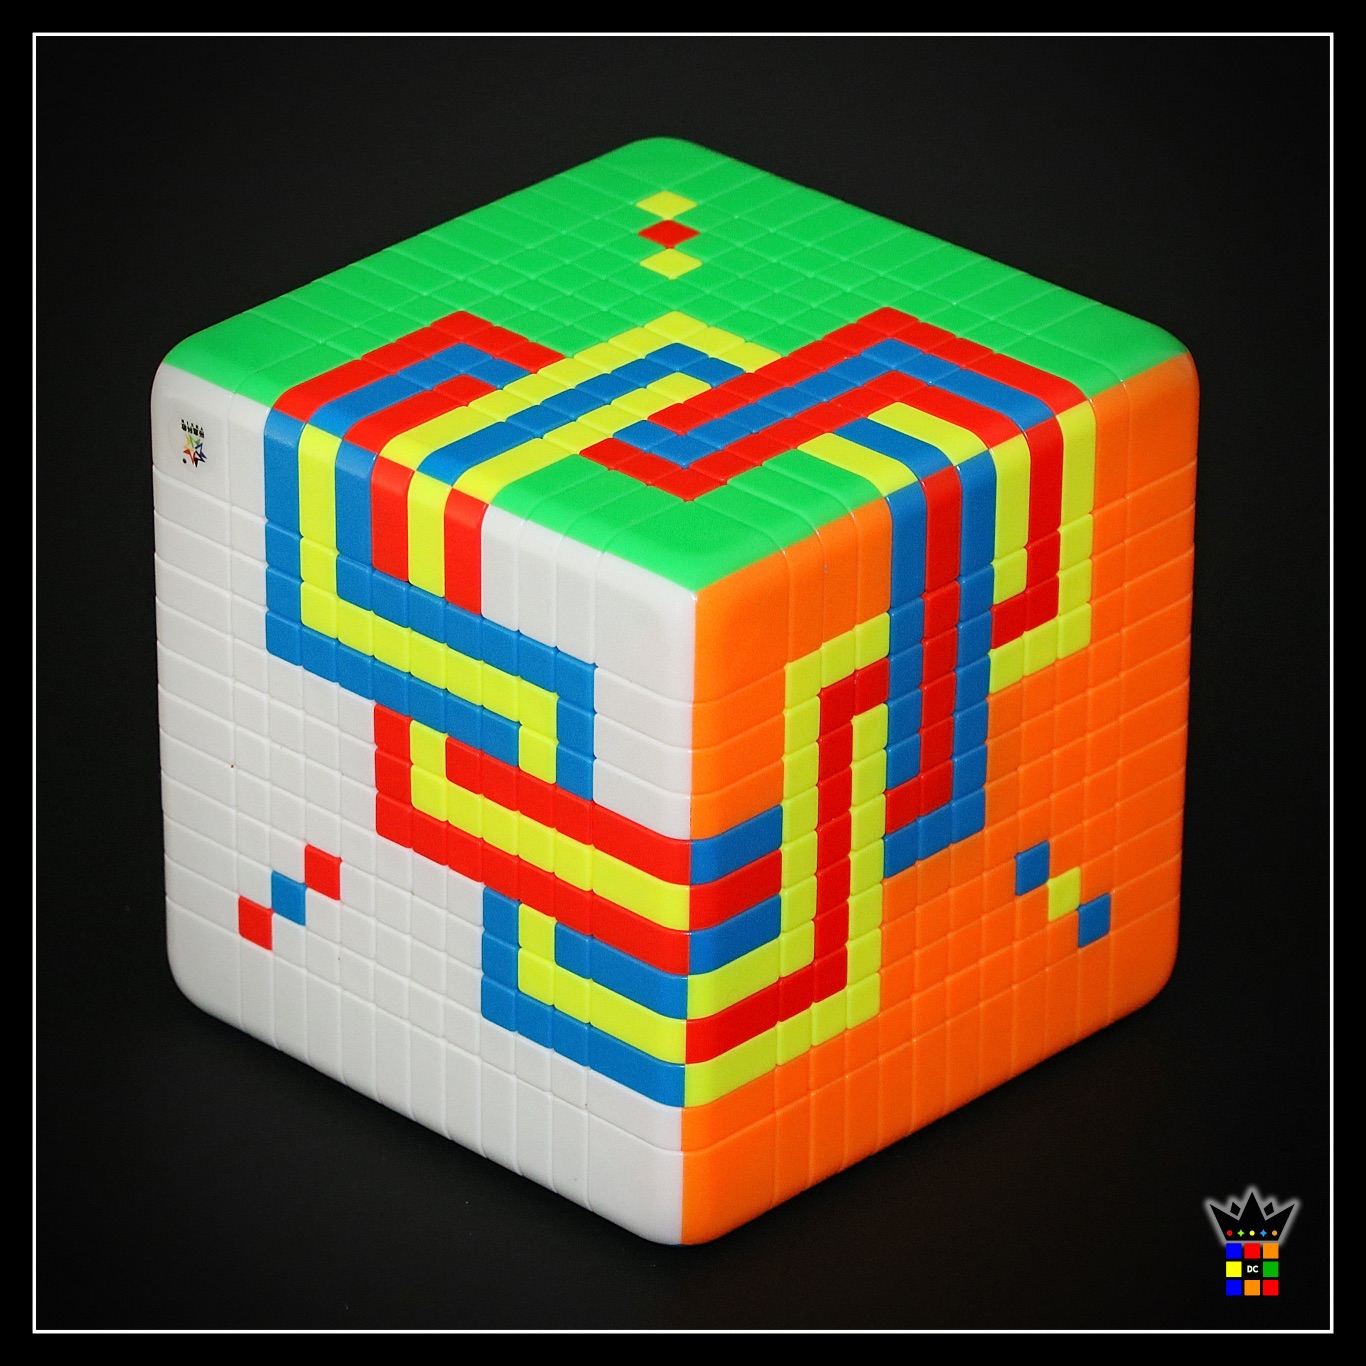 GIANT 10x10 Rubik's Cube Full Solve! 